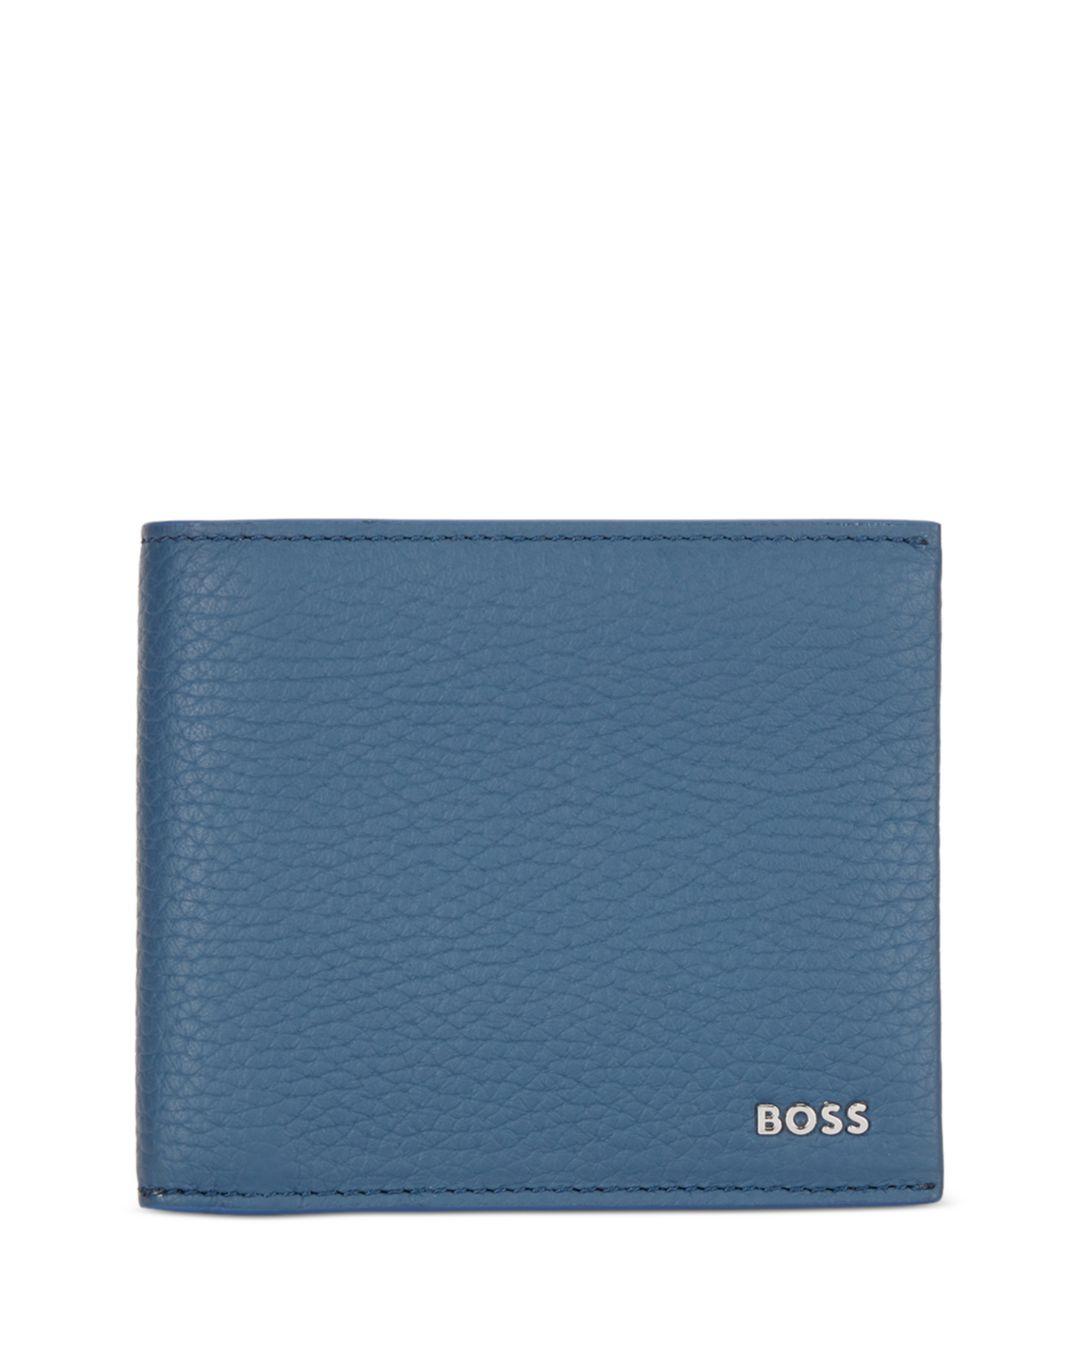 BOSS by HUGO BOSS Crosstown Leather Wallet in Blue for Men | Lyst